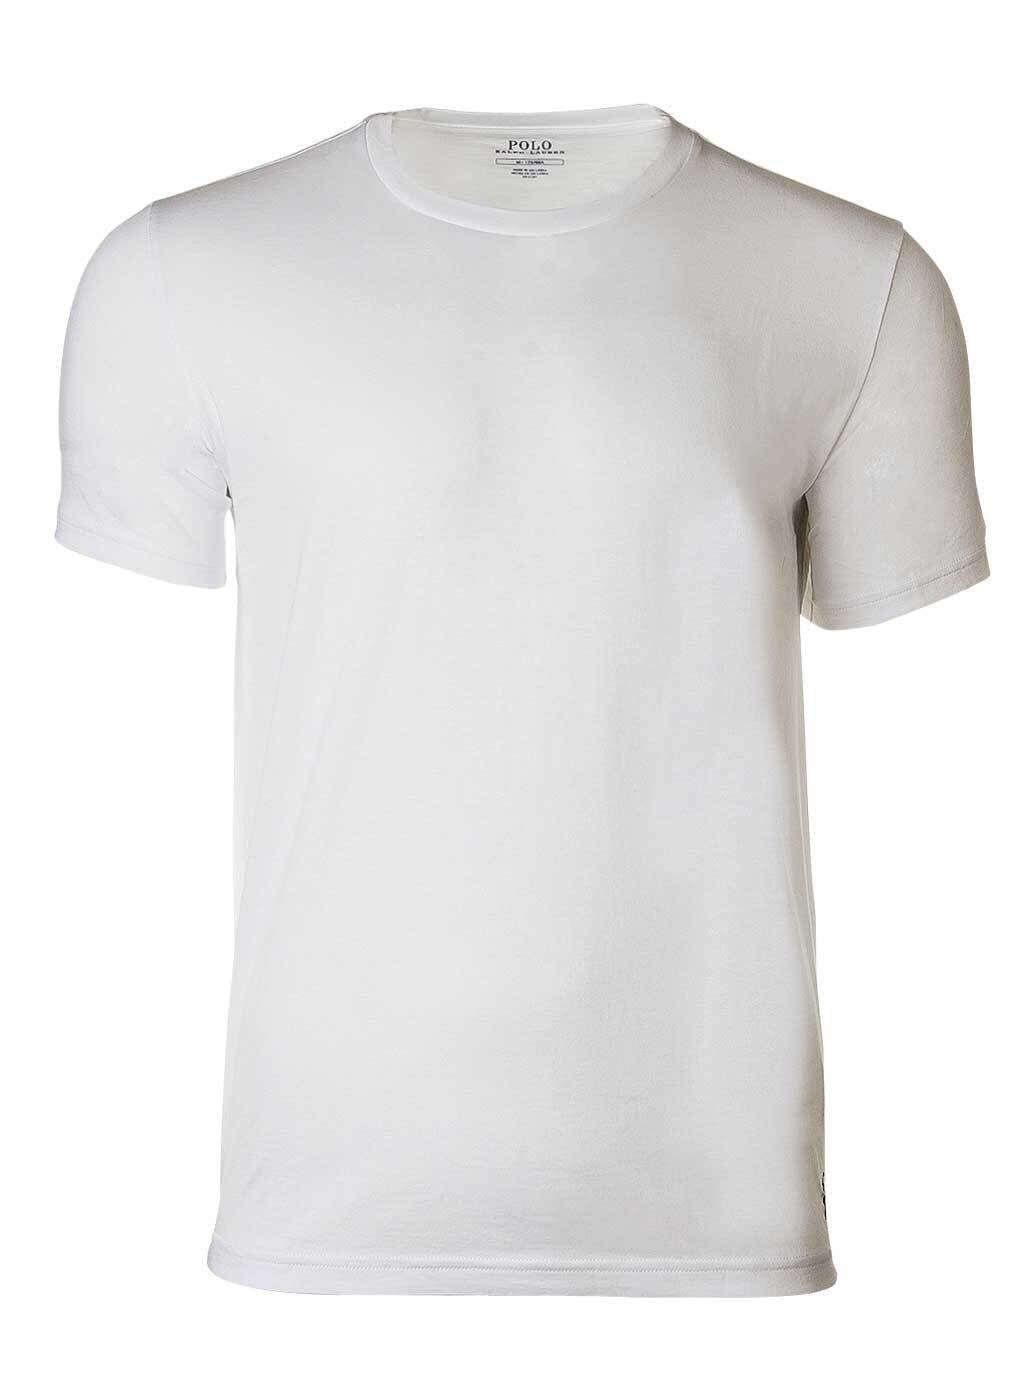 Polo Ralph Lauren T-Shirt Herren Kurzarmshirt - S/S Crew-Sleep Top, kurzes Weiß